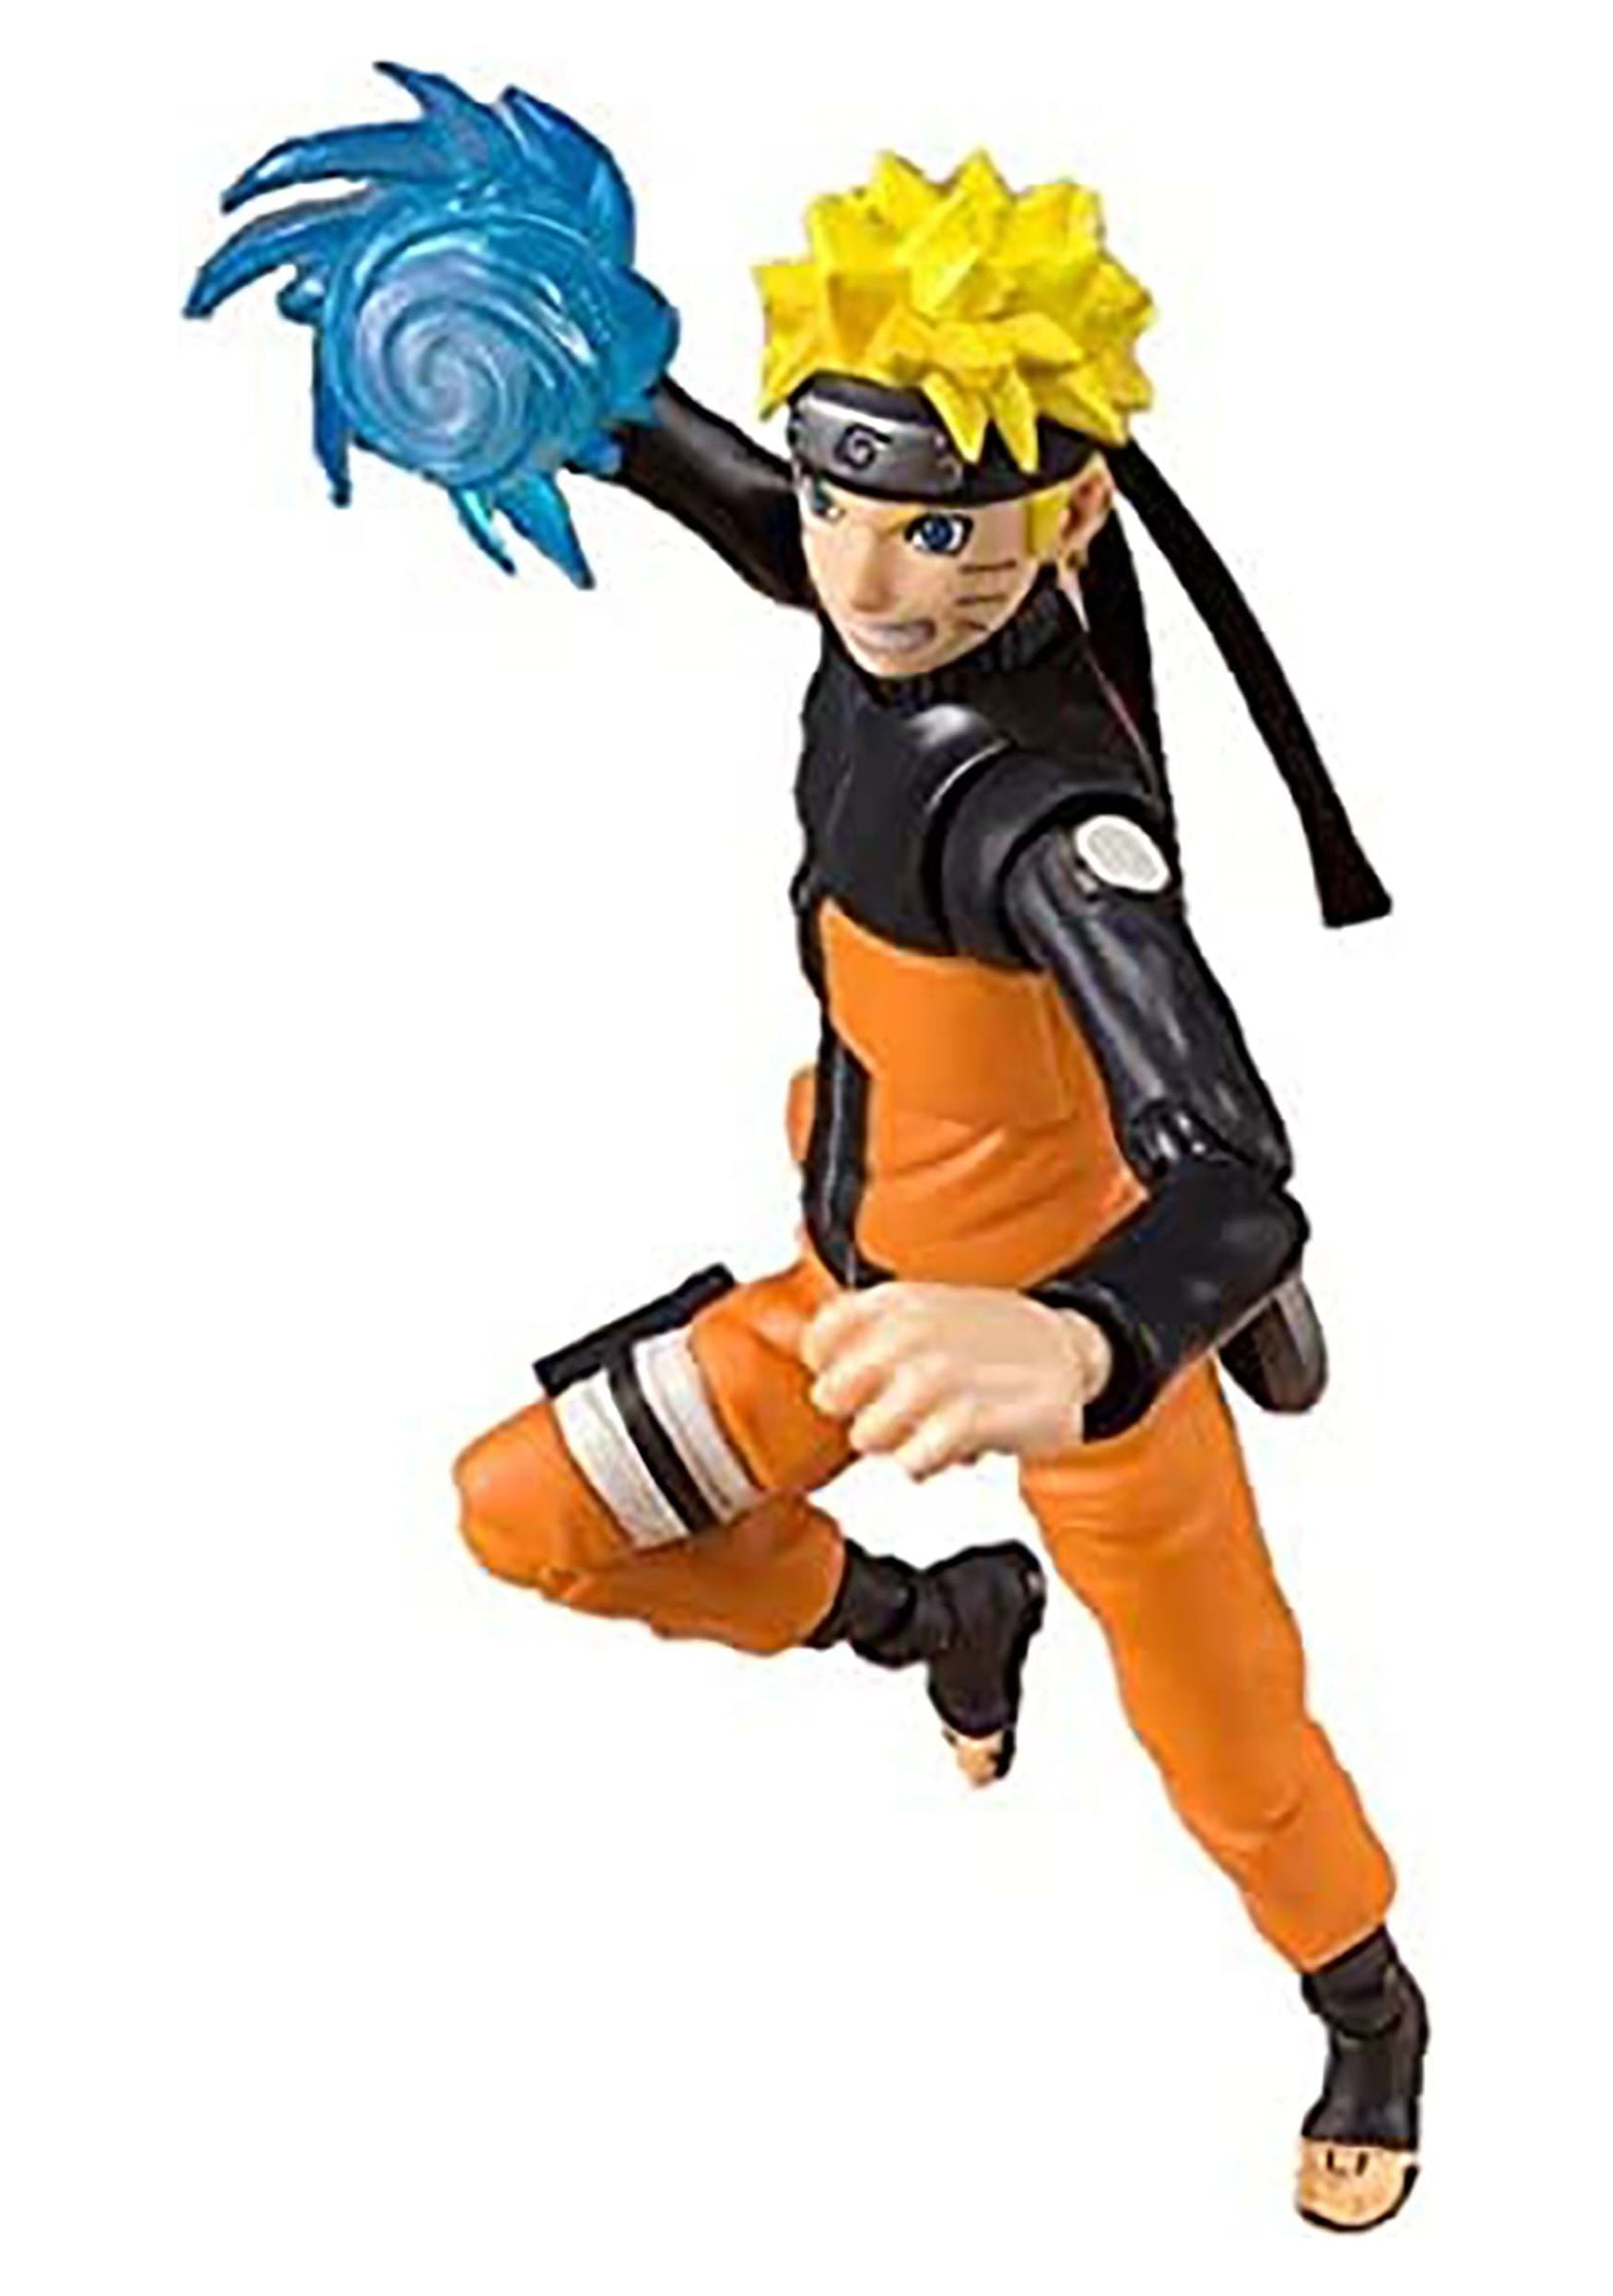 Bandai Spirits SH Figuarts Naruto Uzumaki Action Figure 